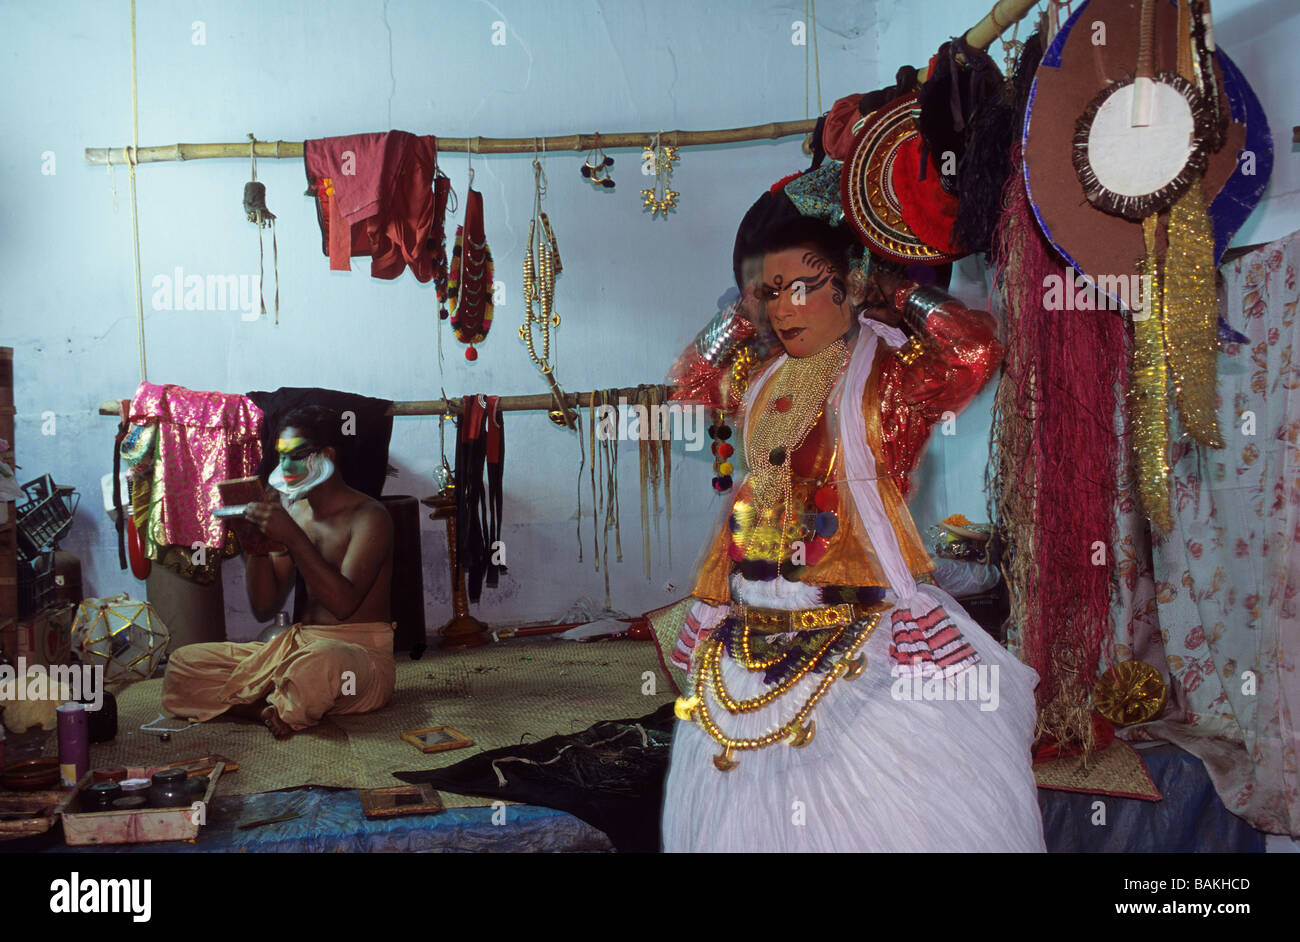 India Kerala State, Kochi, vestirsi di un attore Kathakali, danza teatrale Foto Stock